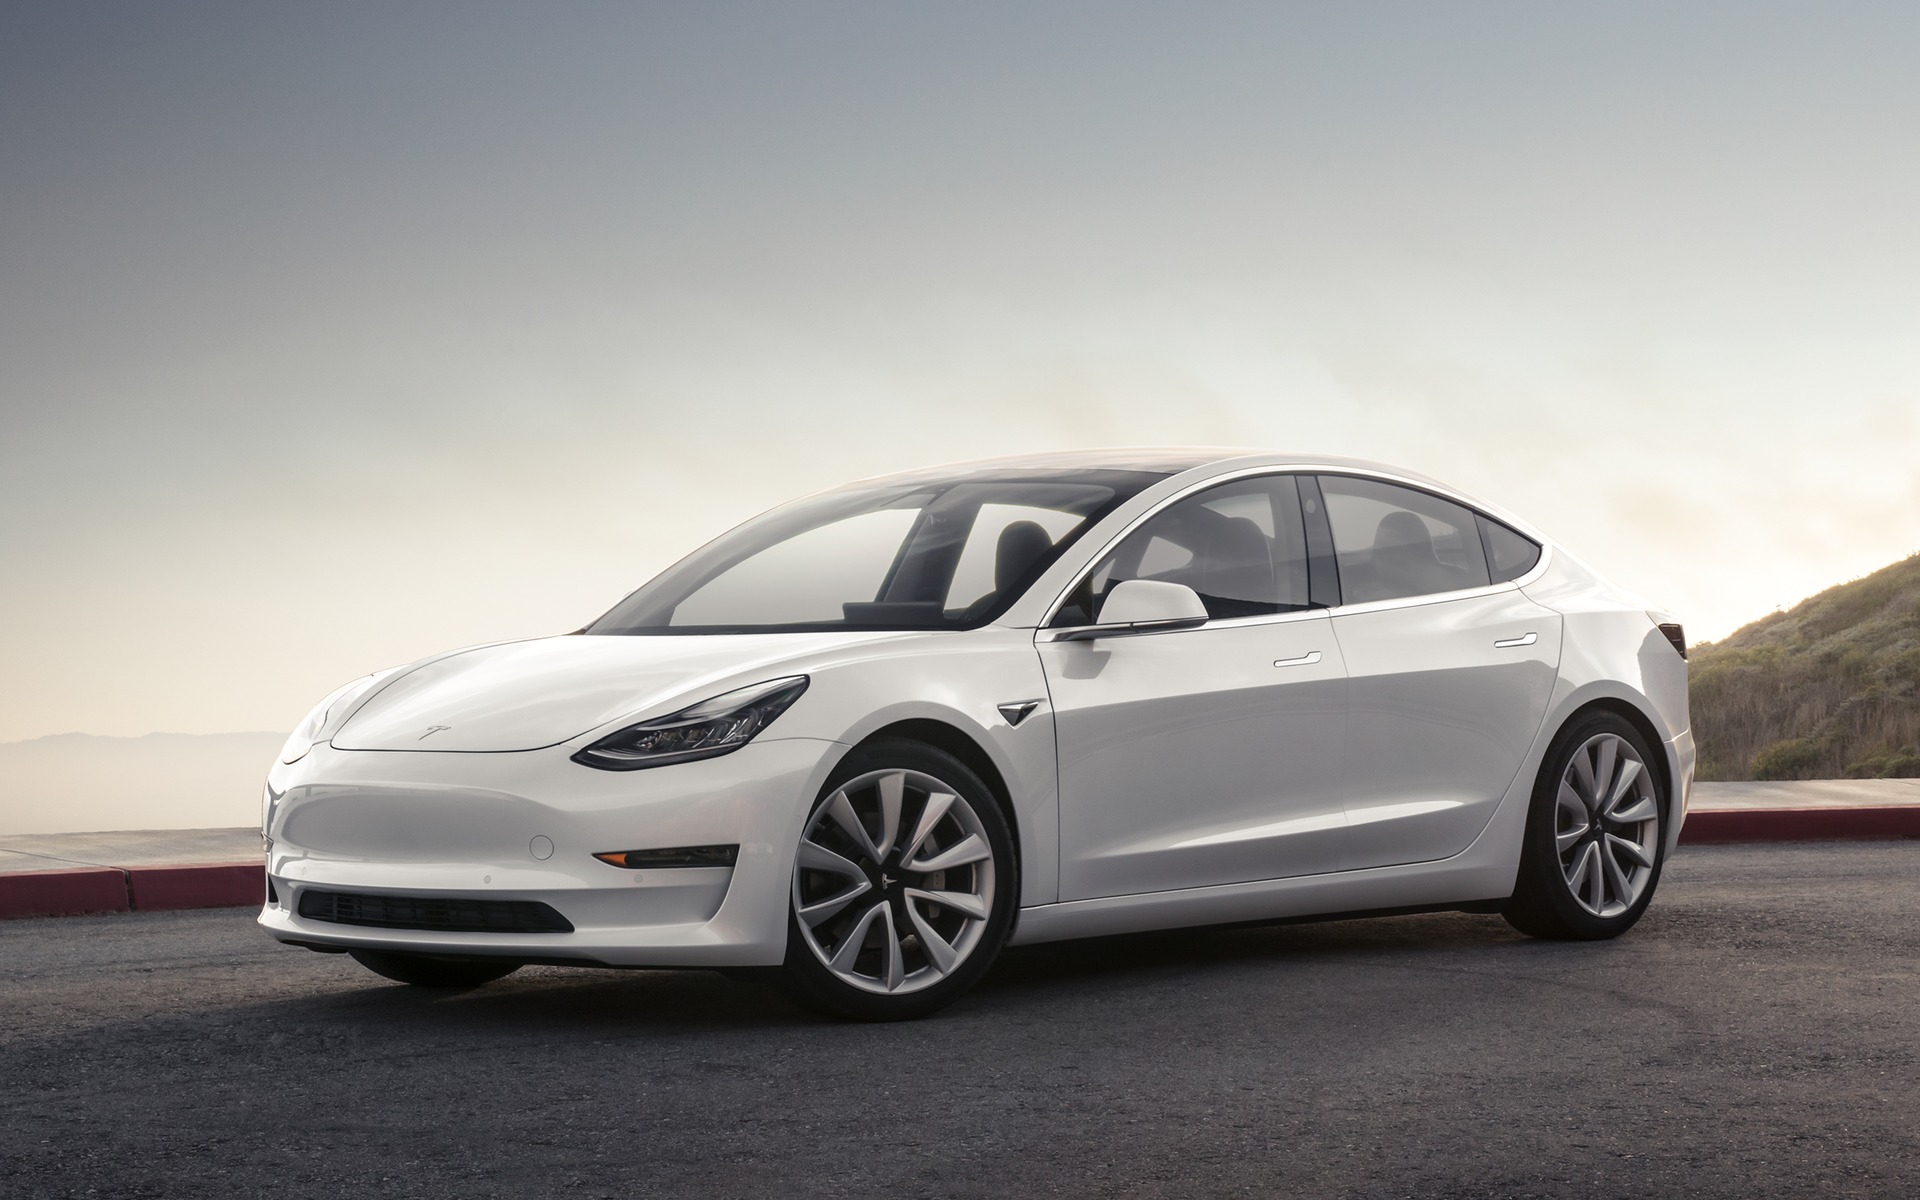 La Tesla Model 3 retouchée est maintenant vendue au Canada